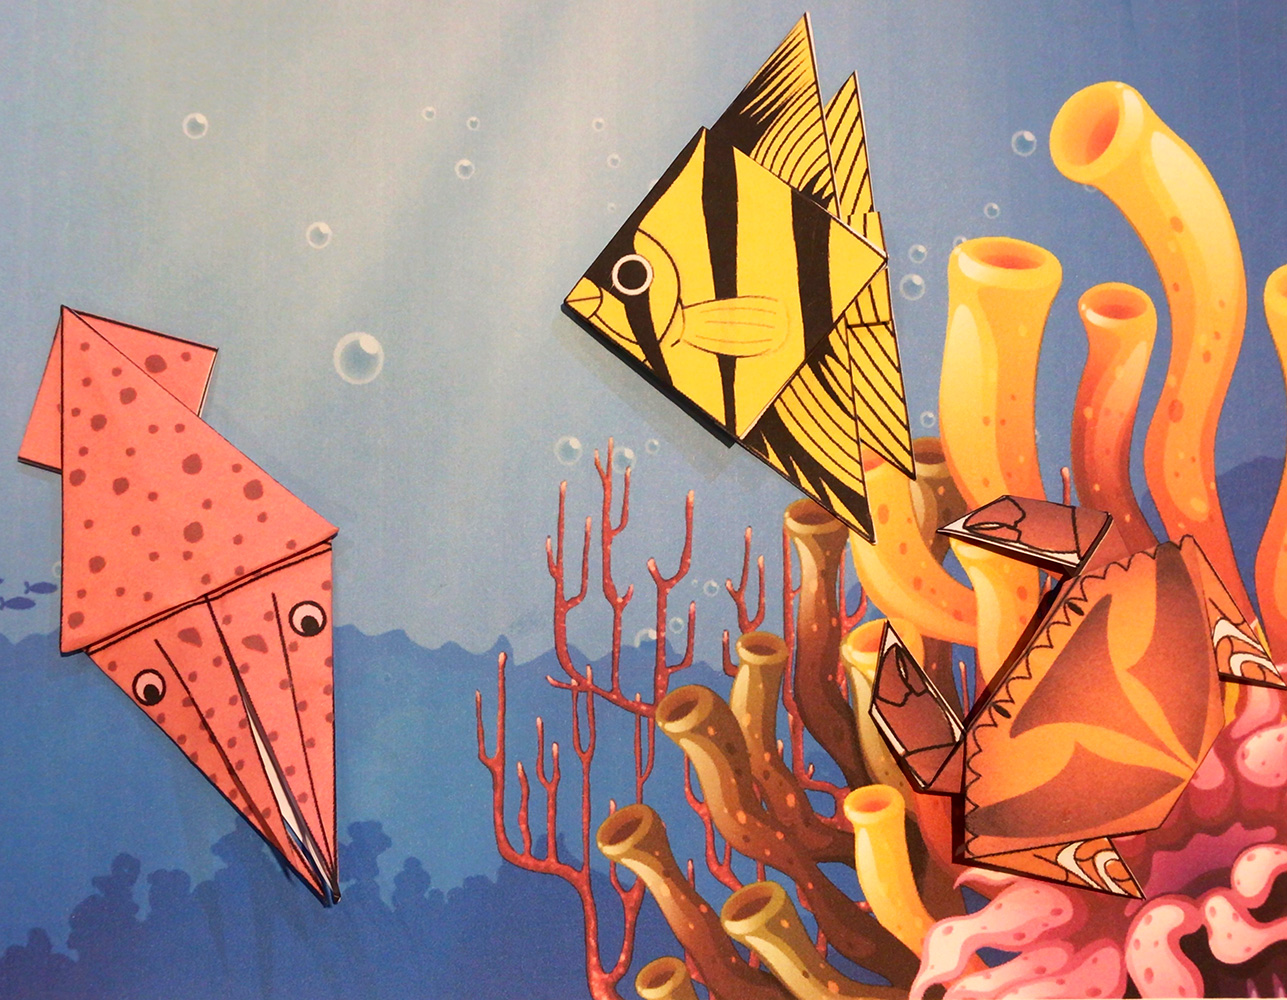 Taller de Origami con figuras marinas